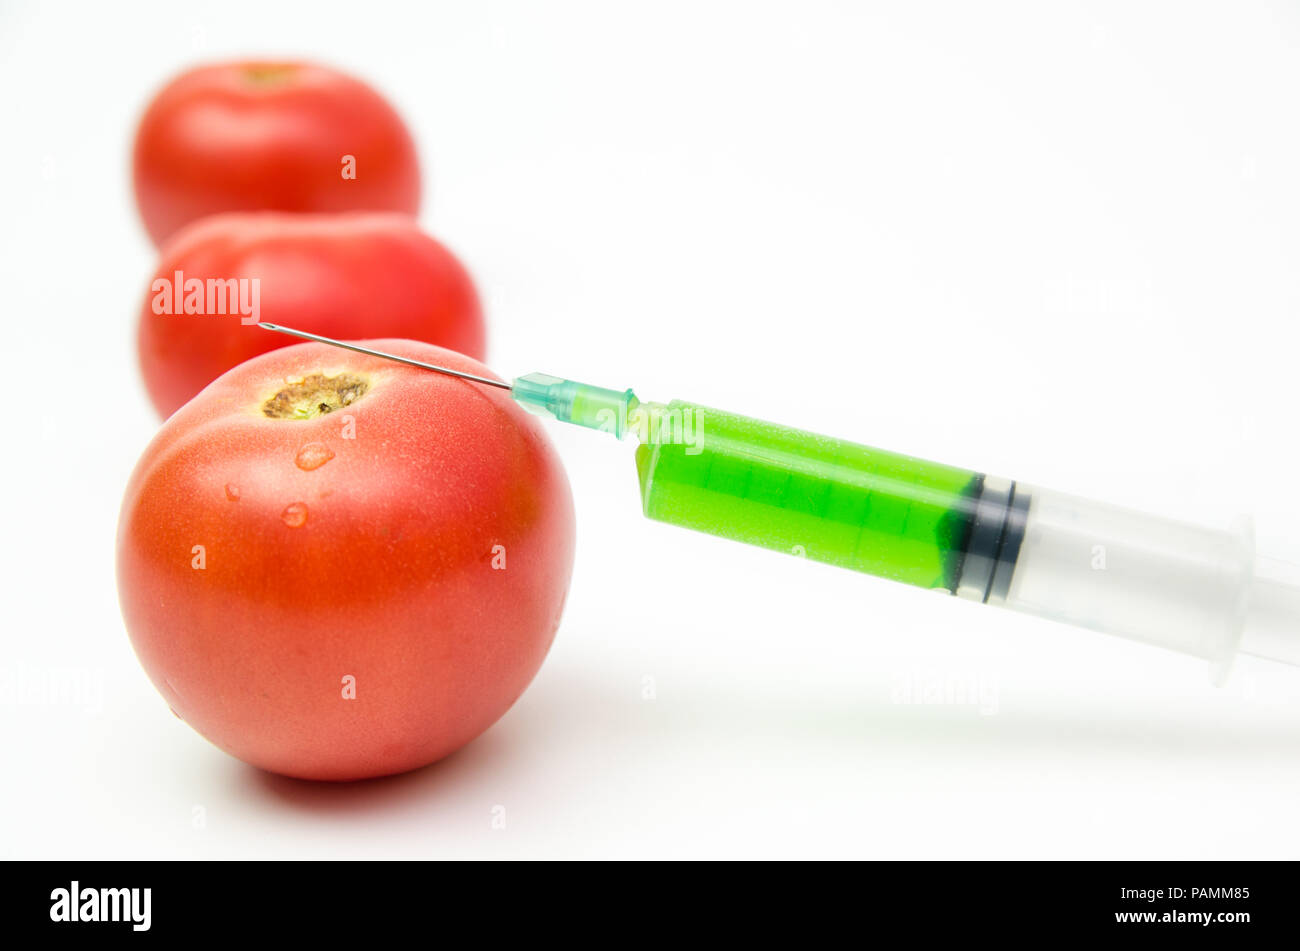 Toxic syringe on some fresh tomatoes indicating dna modification Stock Photo